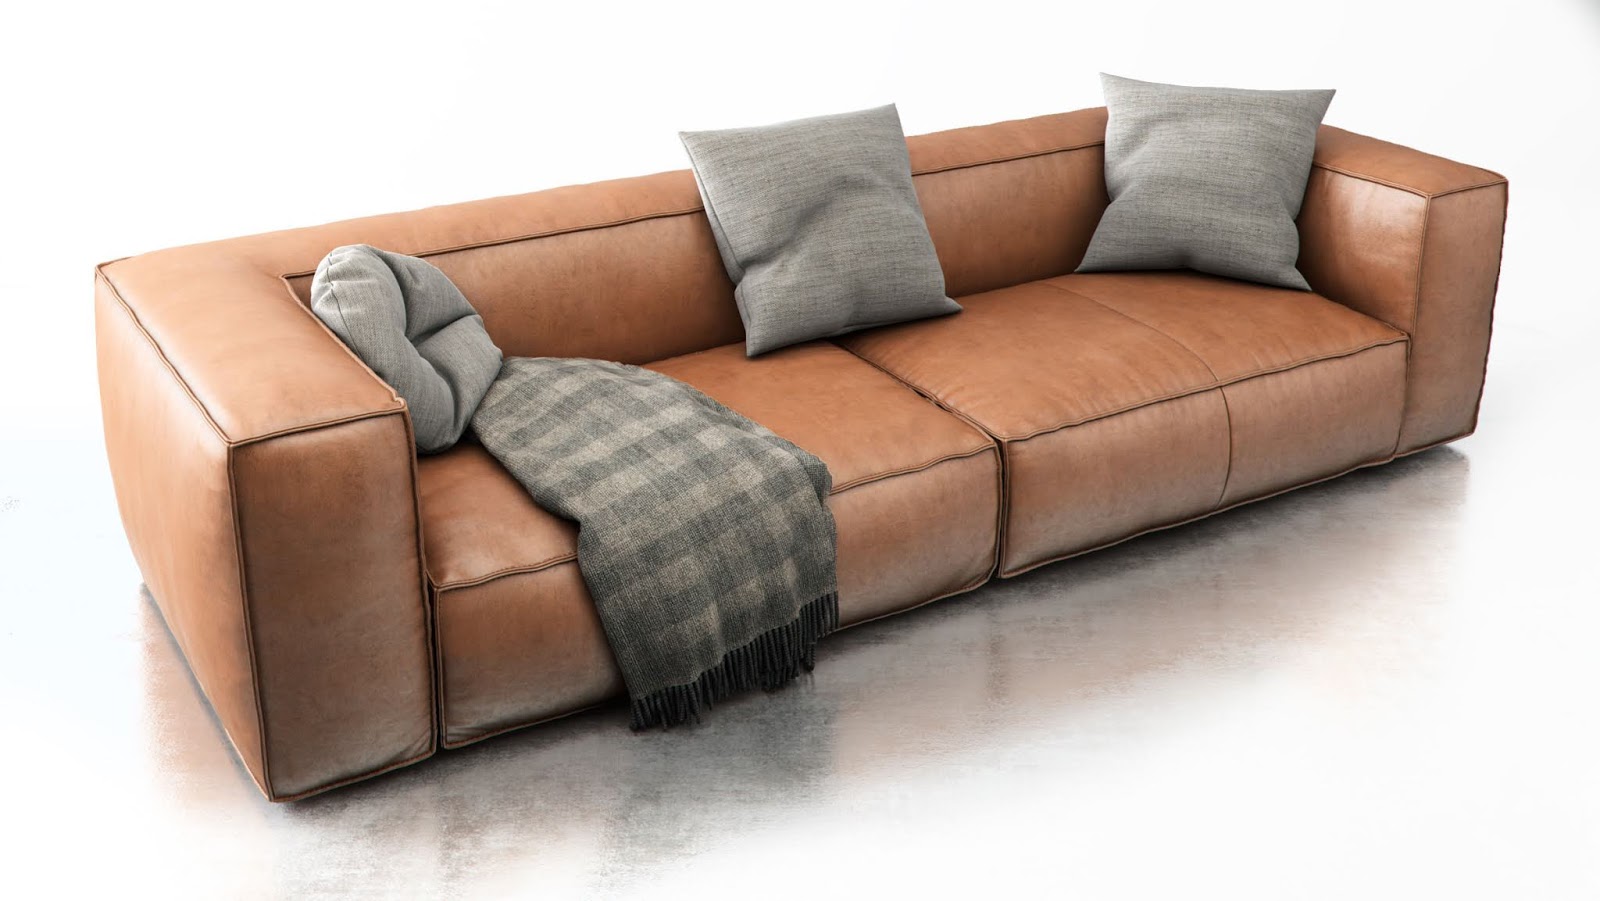 14. Sofa Free Sketchup Model